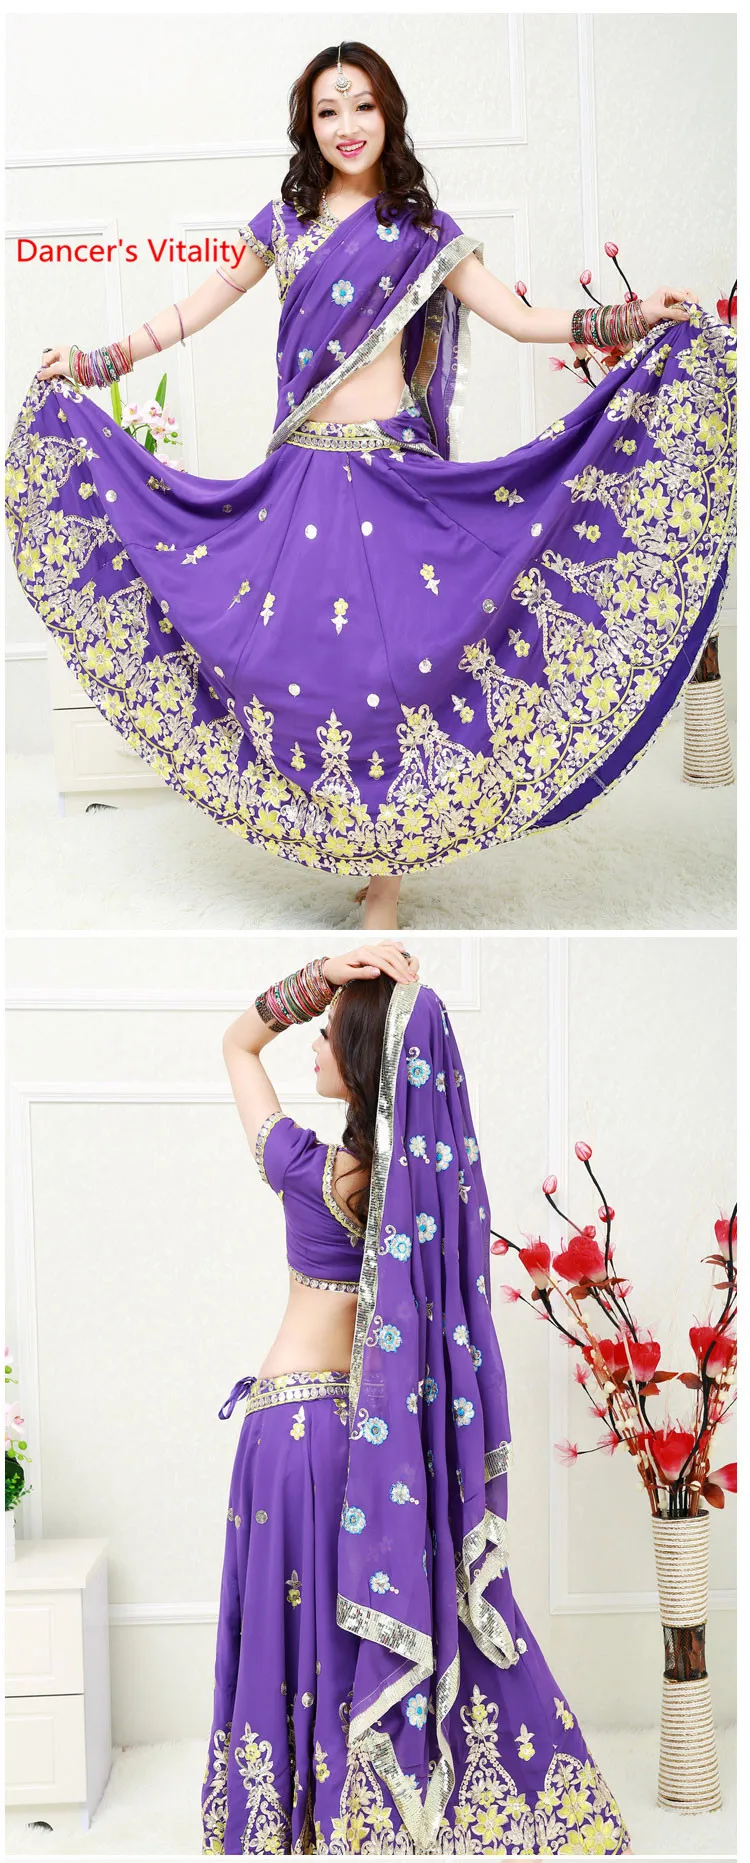 Женские костюмы для соревнований по танцу живота, восточные костюмы с вышивкой для танца живота, индийский танцевальный костюм для выступлений/тренировок